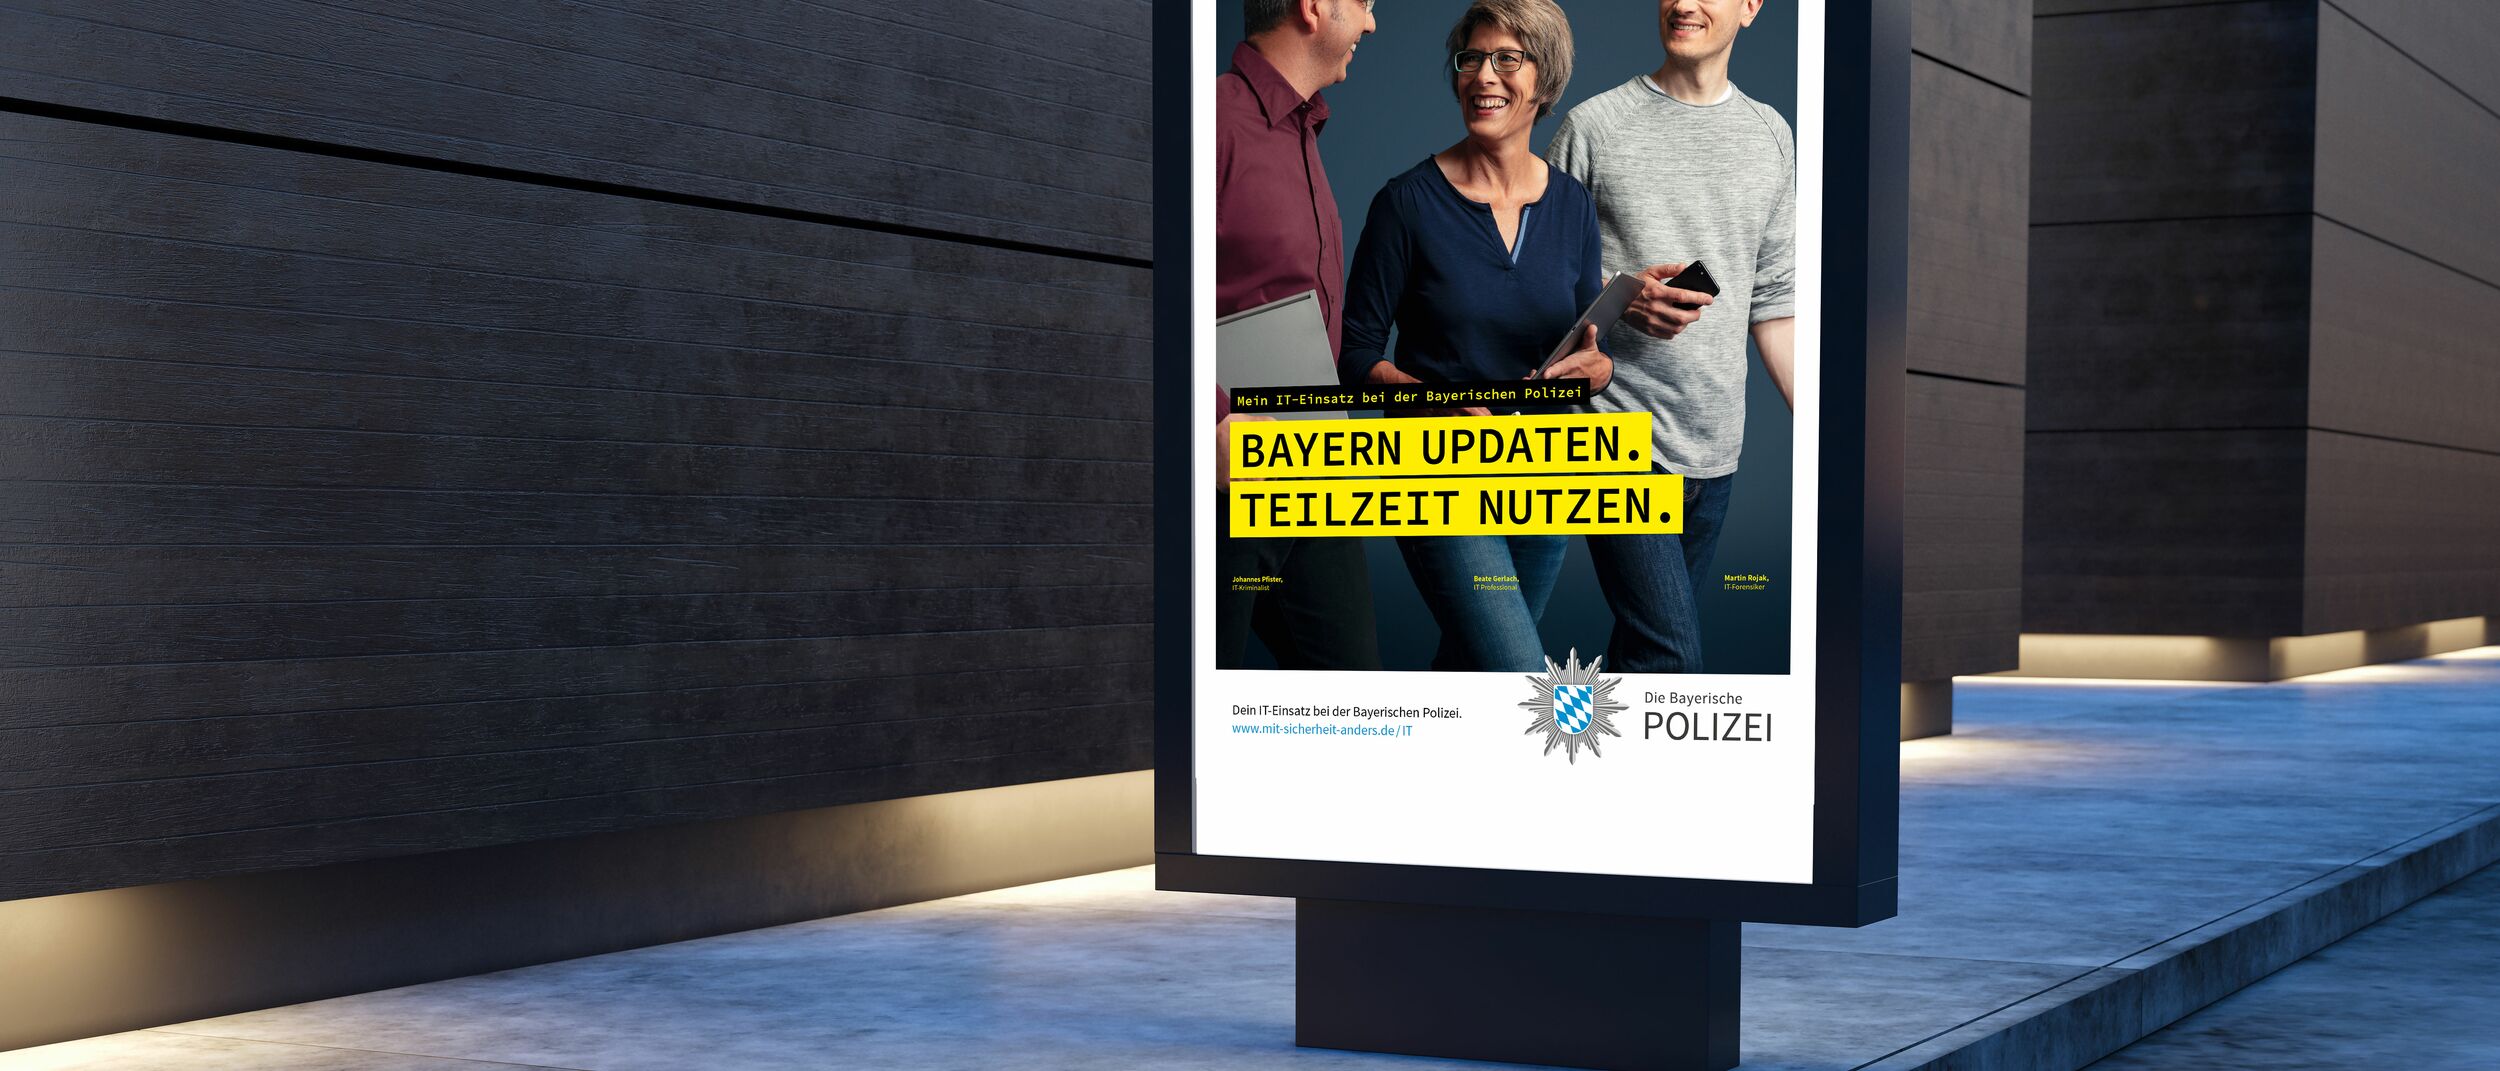 Bayrische Polizei LUK - Plakat